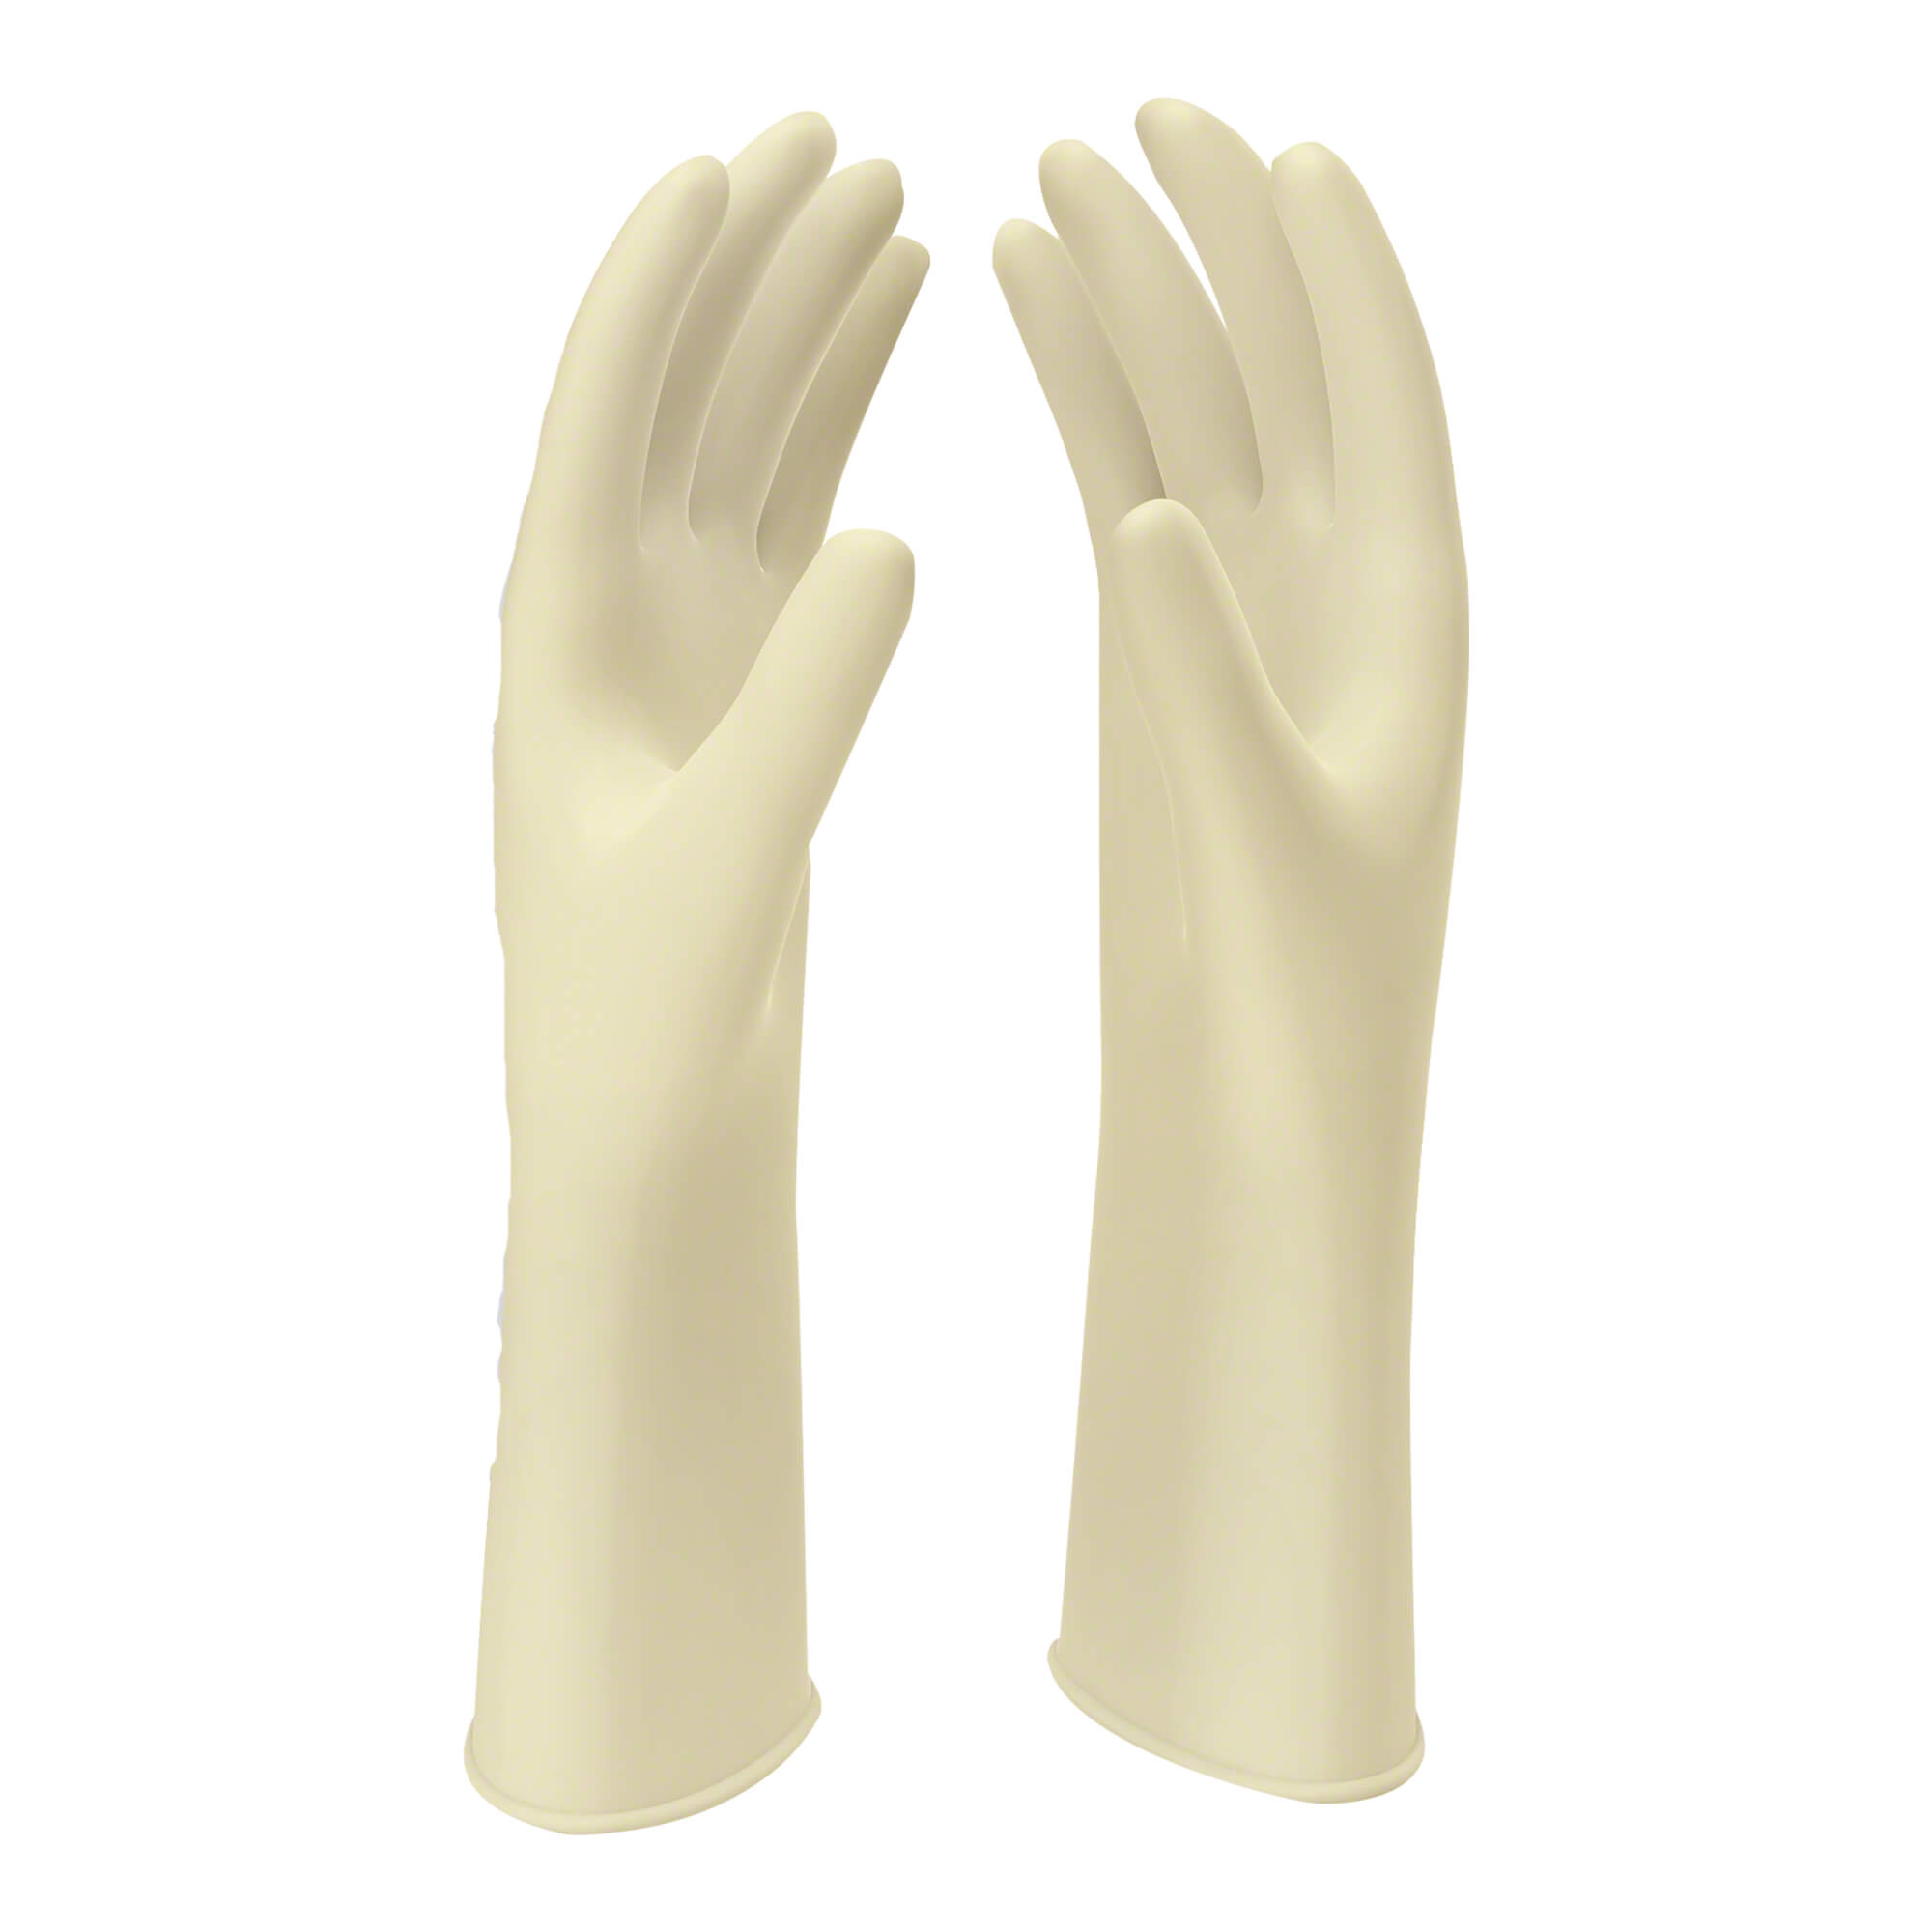 Naturweiße Latex OP-Handschuhe. Größe 7.